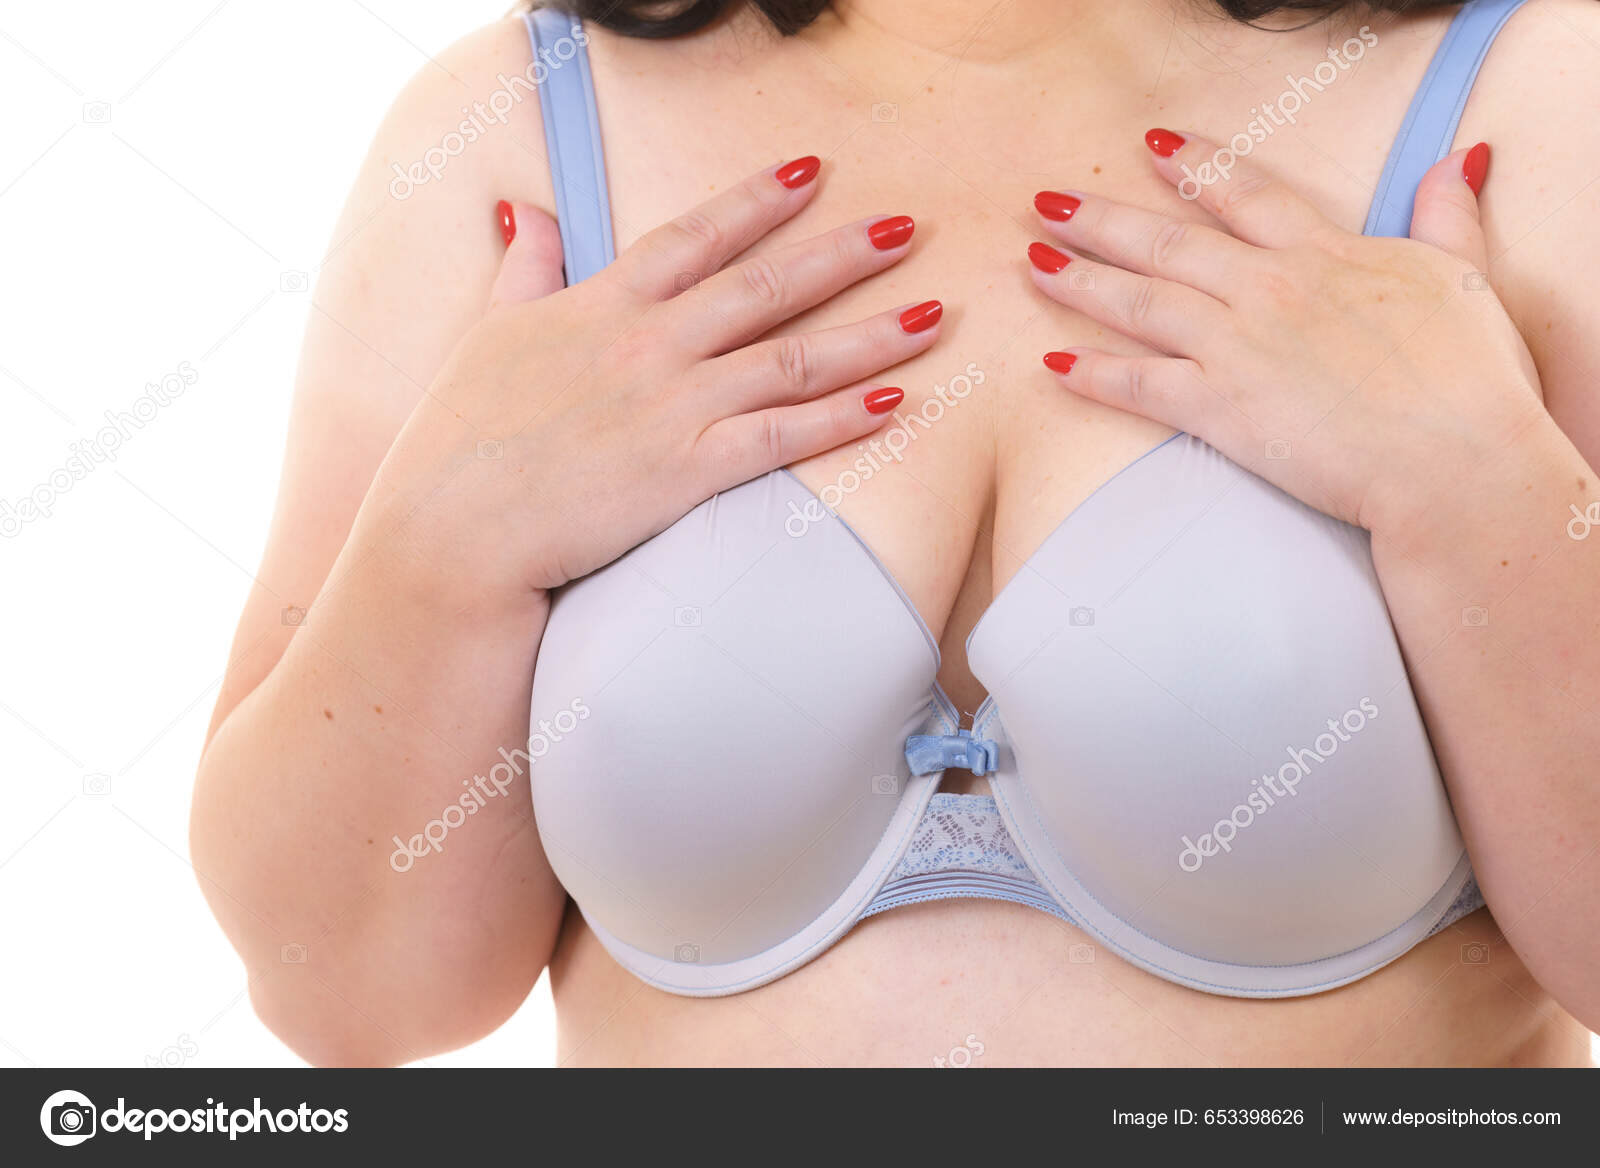 Weibliche Große Brüste Dessous Size Fat Mature Unkenntlich Frau Trägt -  Stockfotografie: lizenzfreie Fotos © Voyagerix 653398626 | Depositphotos